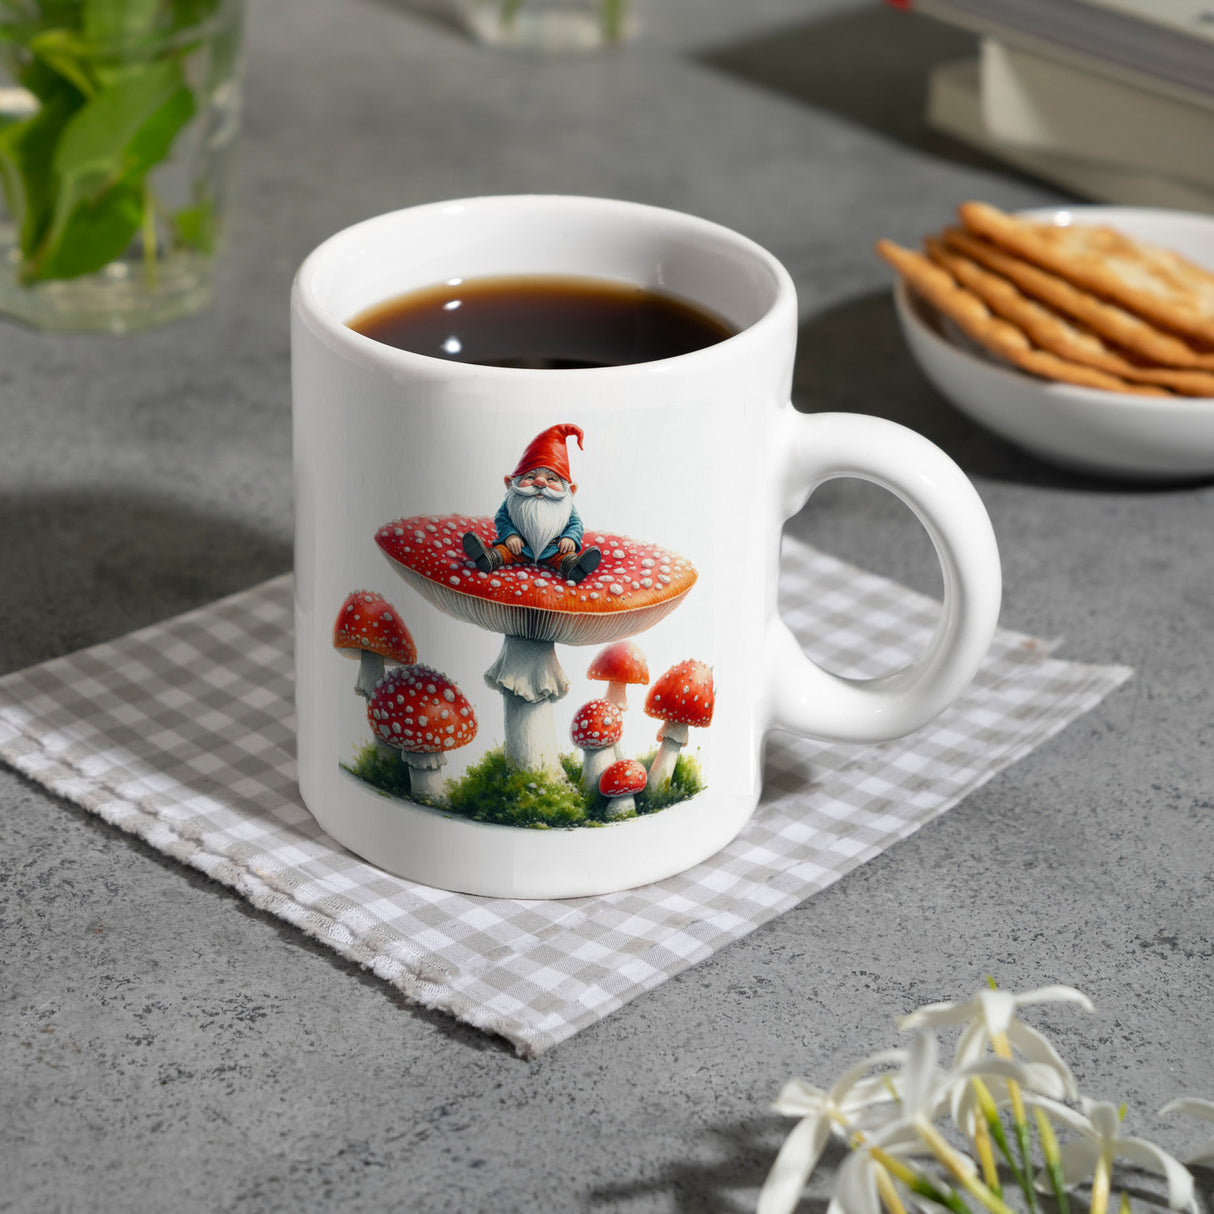 Gartenzwerg auf einem Fliegenpilz Kaffeebecher